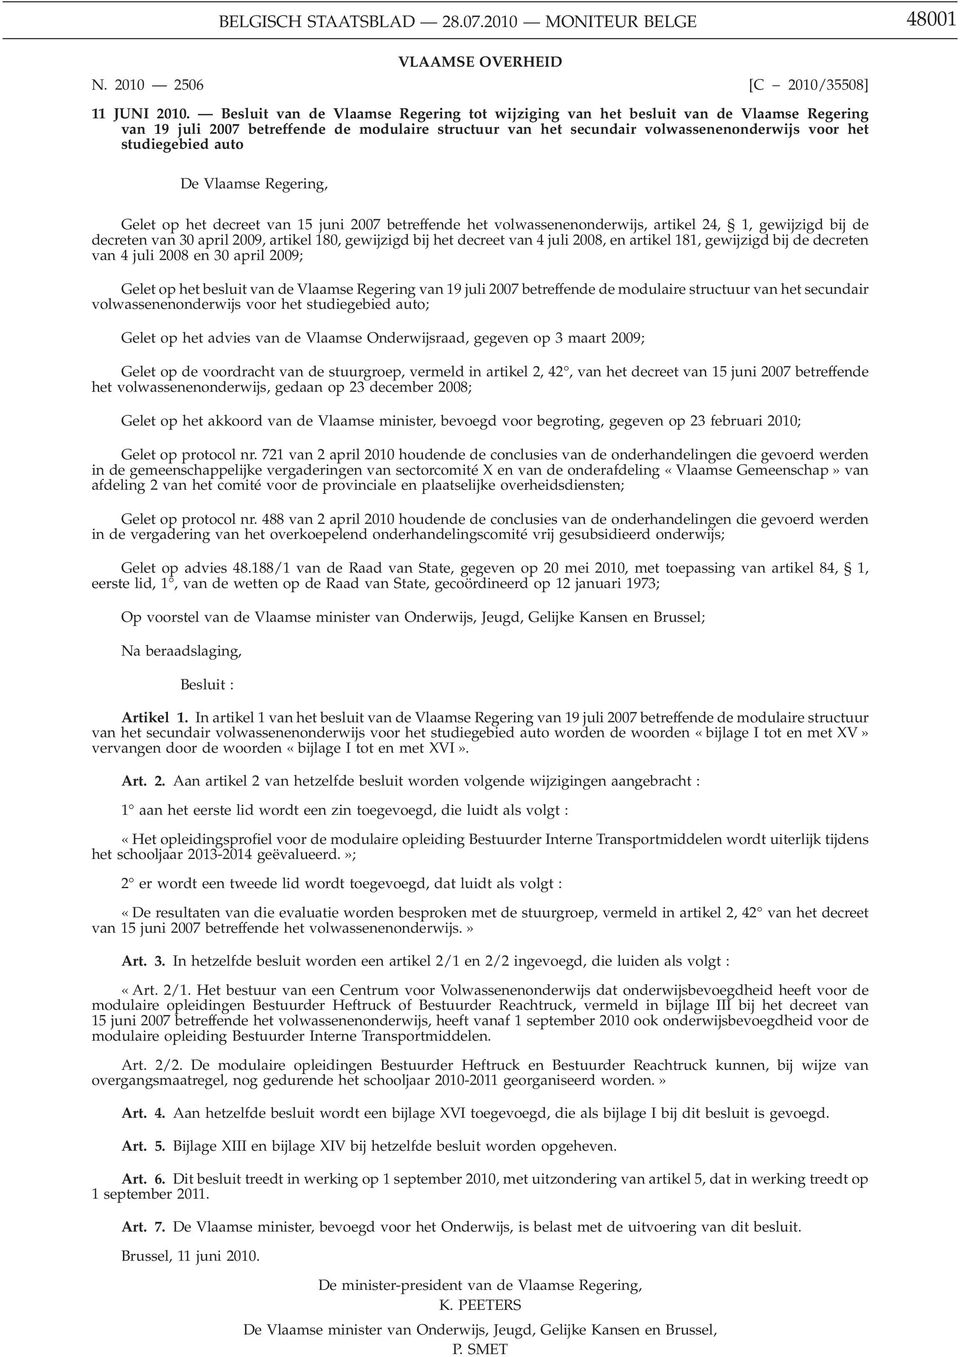 auto De Vlaamse Regering, Gelet op het decreet van 15 juni 2007 betreffende het volwassenenonderwijs, artikel 24, 1, gewijzigd bij de decreten van 30 april 2009, artikel 180, gewijzigd bij het